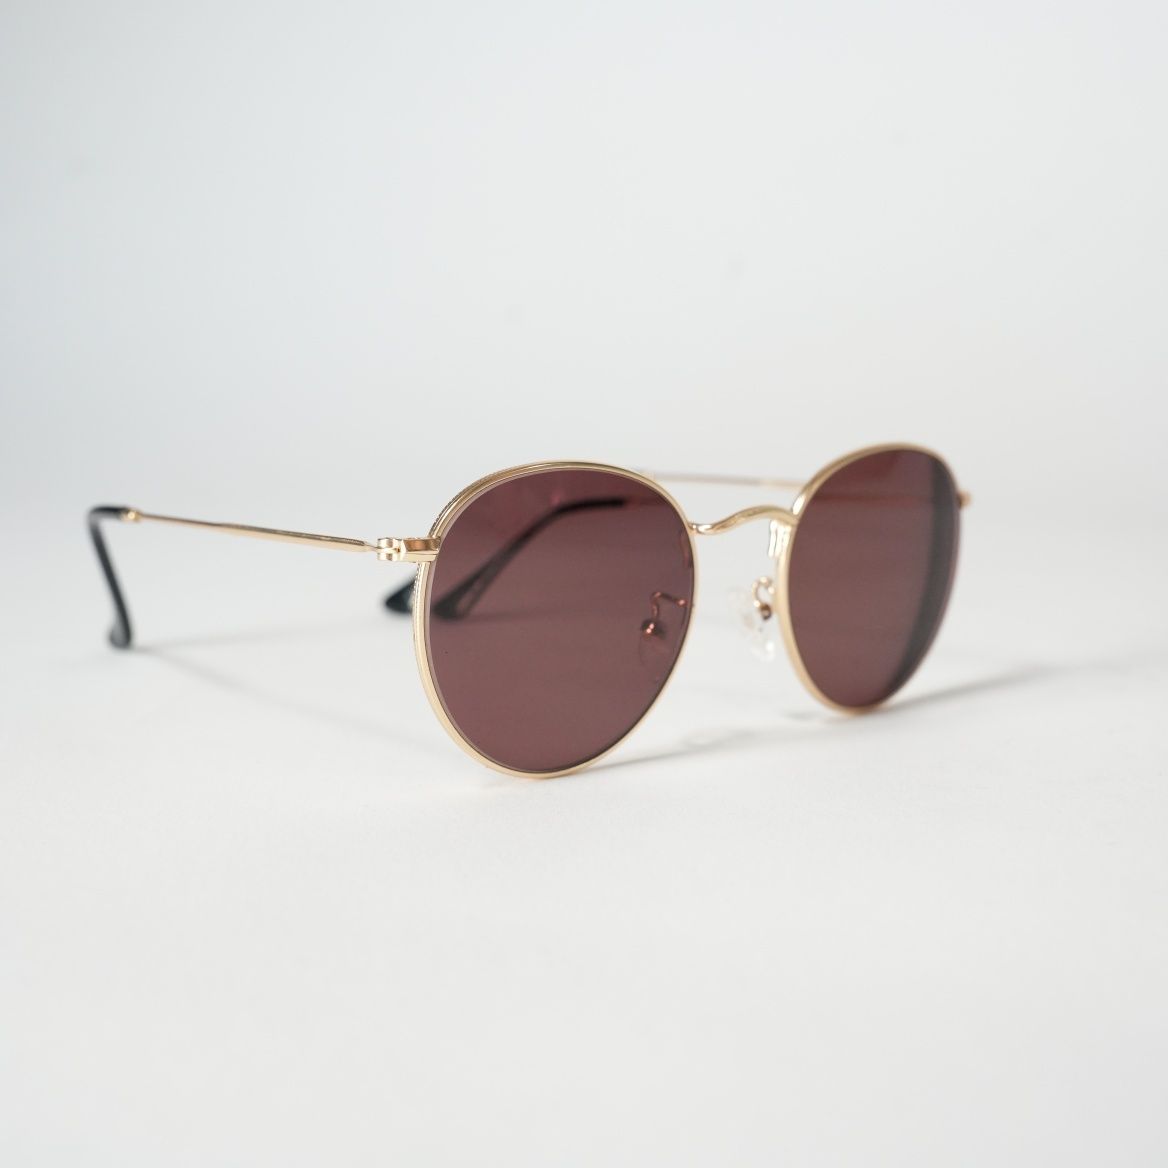 Okulary przeciwsłoneczne korekcyjne Matylda 2.0 Goldd